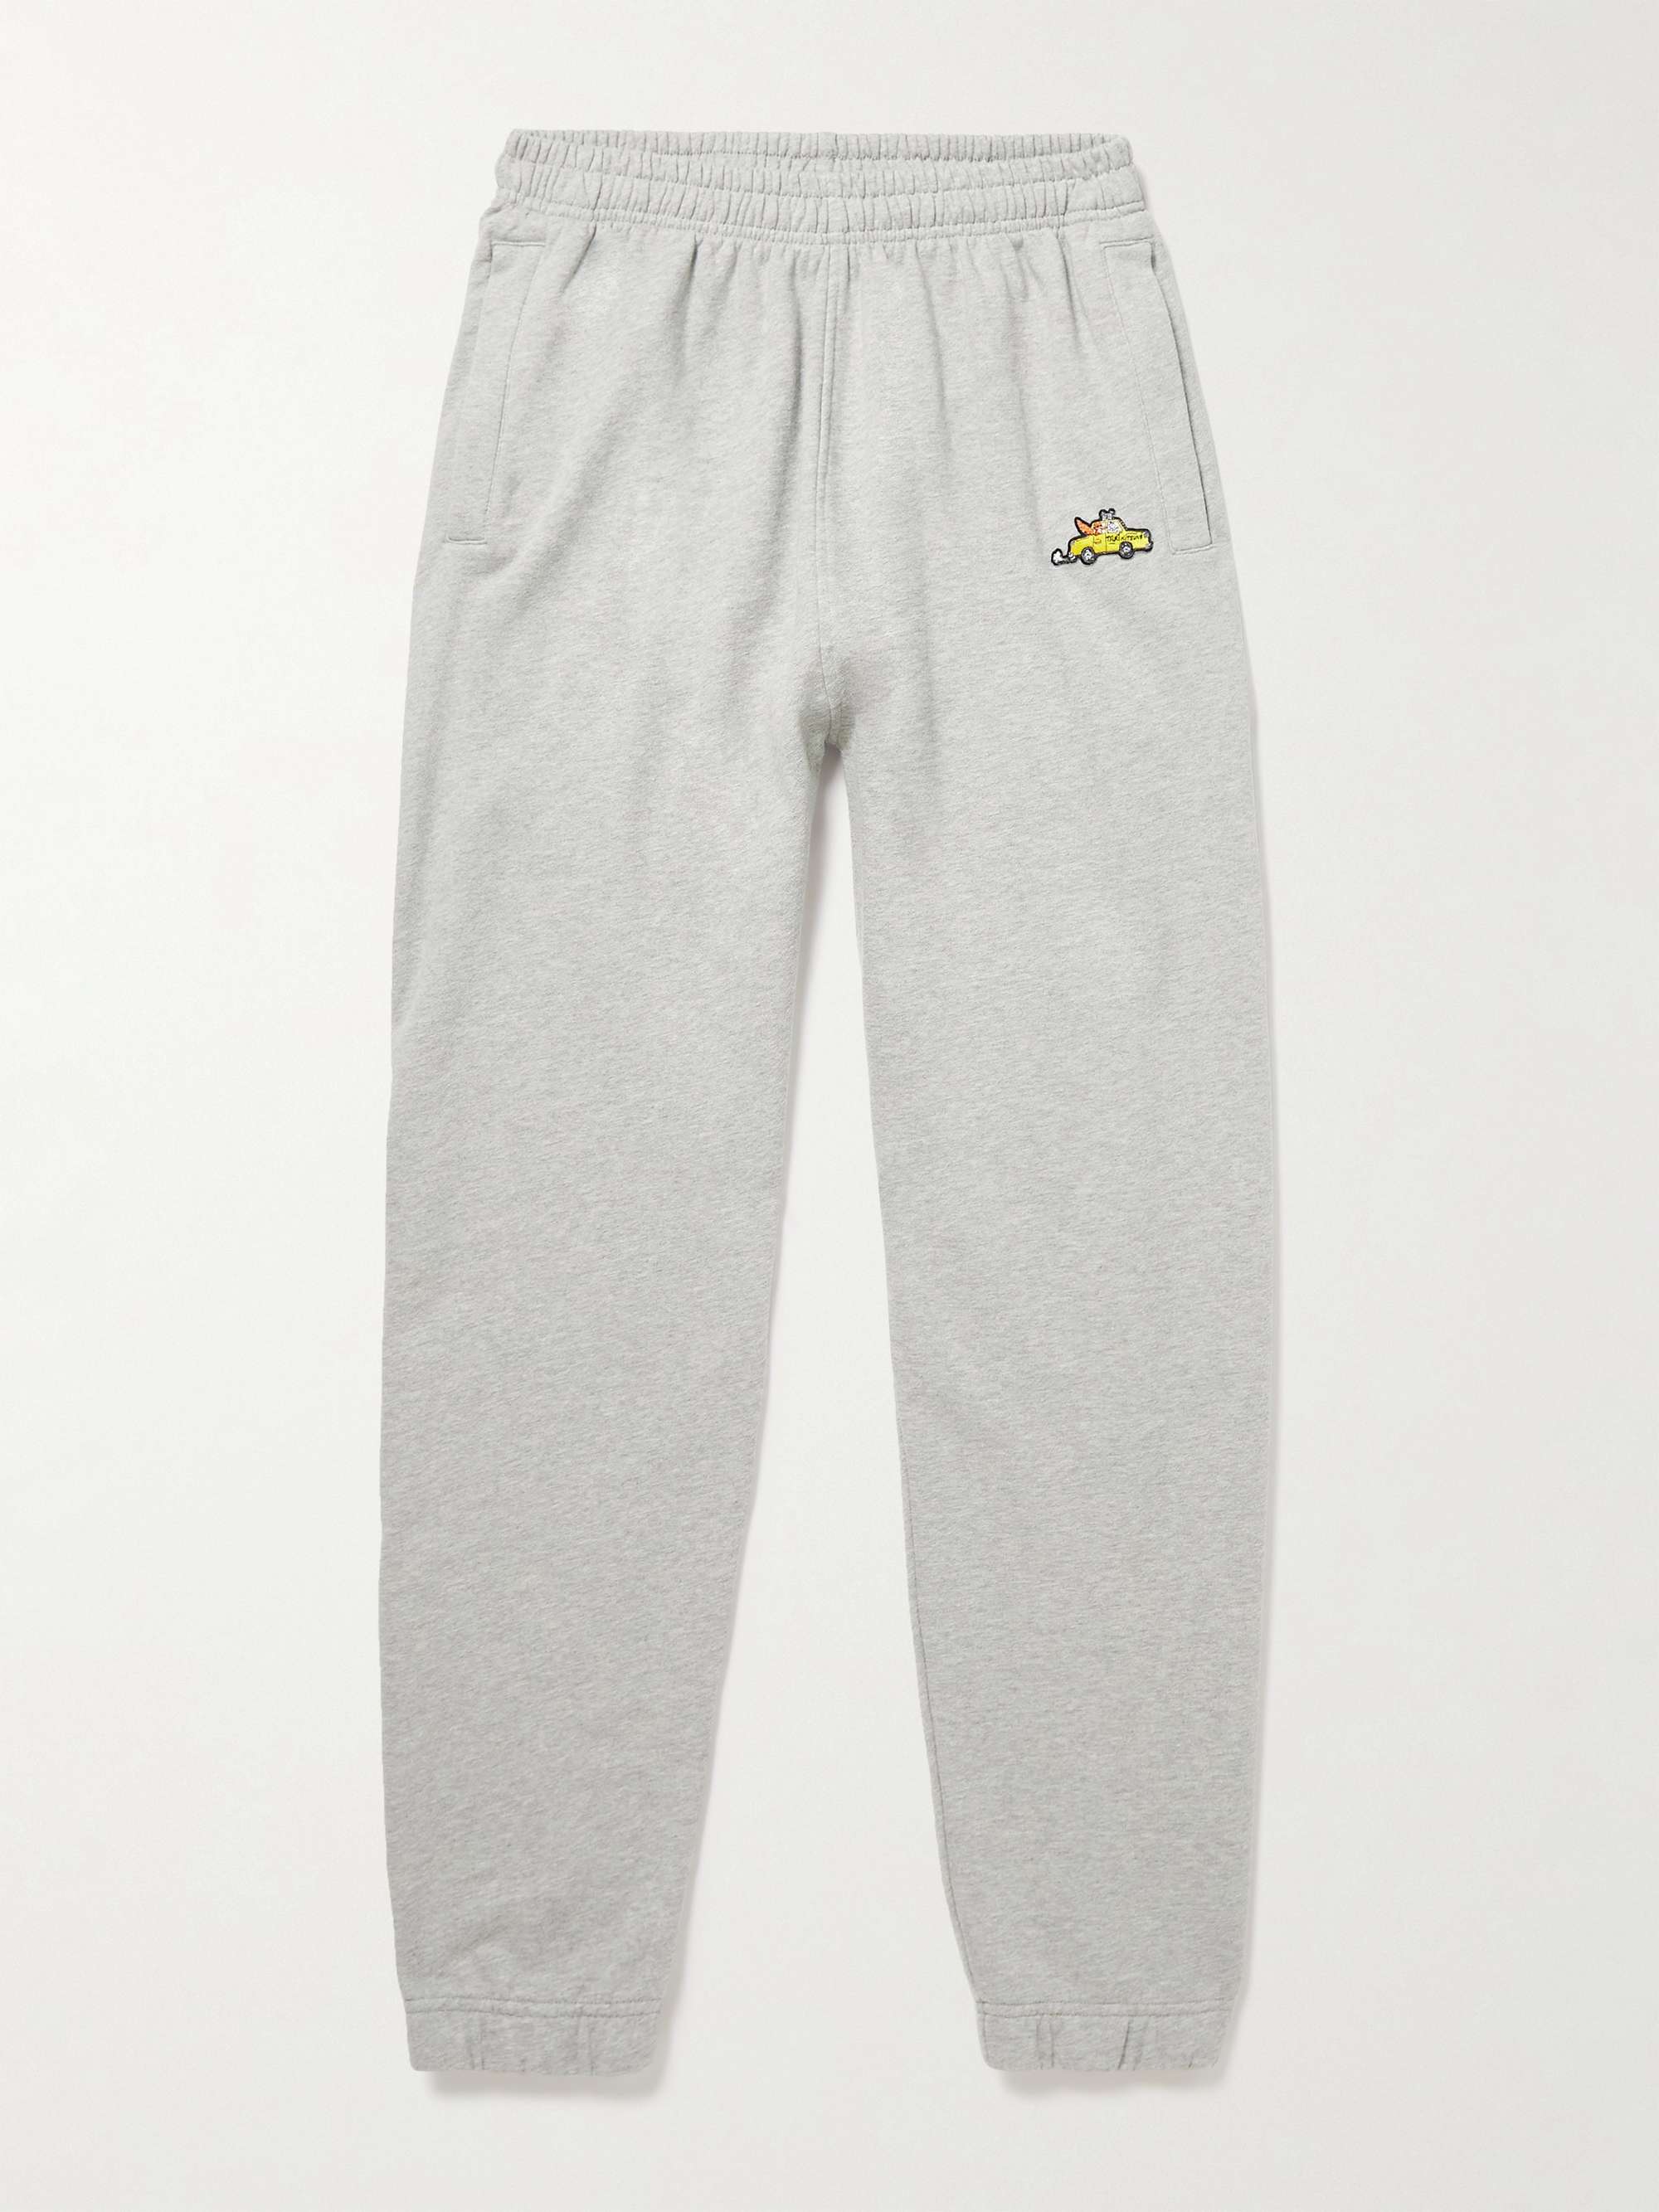 메총 키츠네 스웻팬츠 MAISON KITSUNEE + Olympia Le-Tan Slim-Fit Tapered Appliqued Cotton-Jersey Sweatpants,Gray